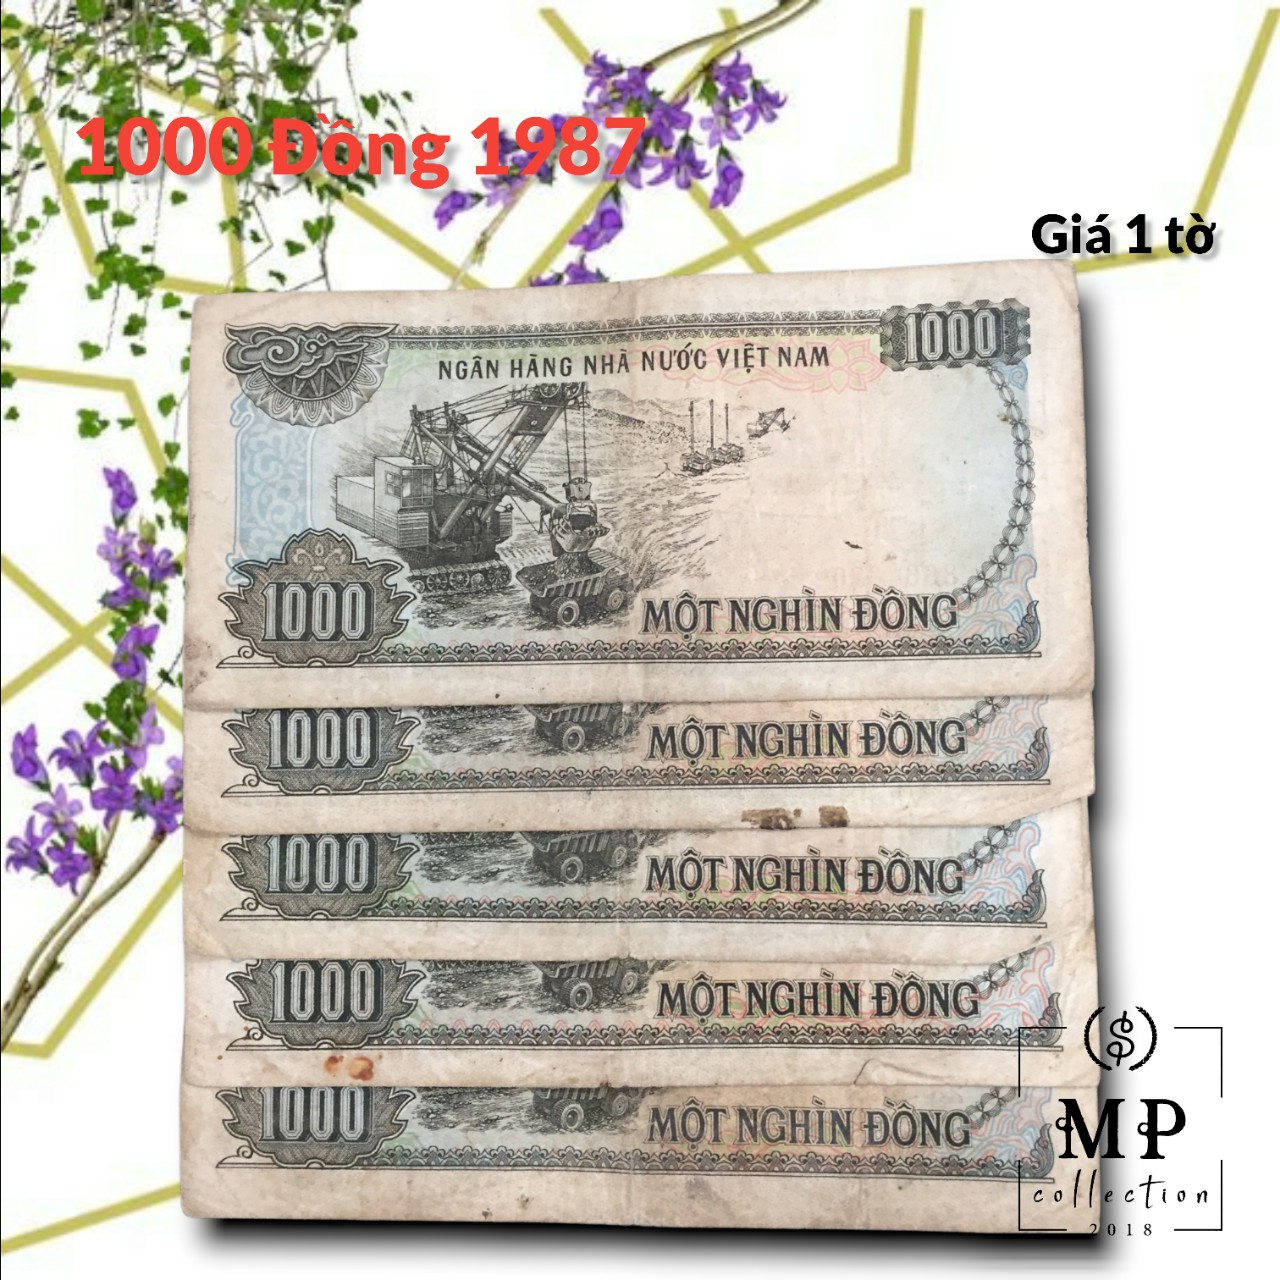 Tờ 1000 đồng 1987 khai thác than ở Quảng Ninh, tiền xưa lưu hành trong thời gian rất ngắn